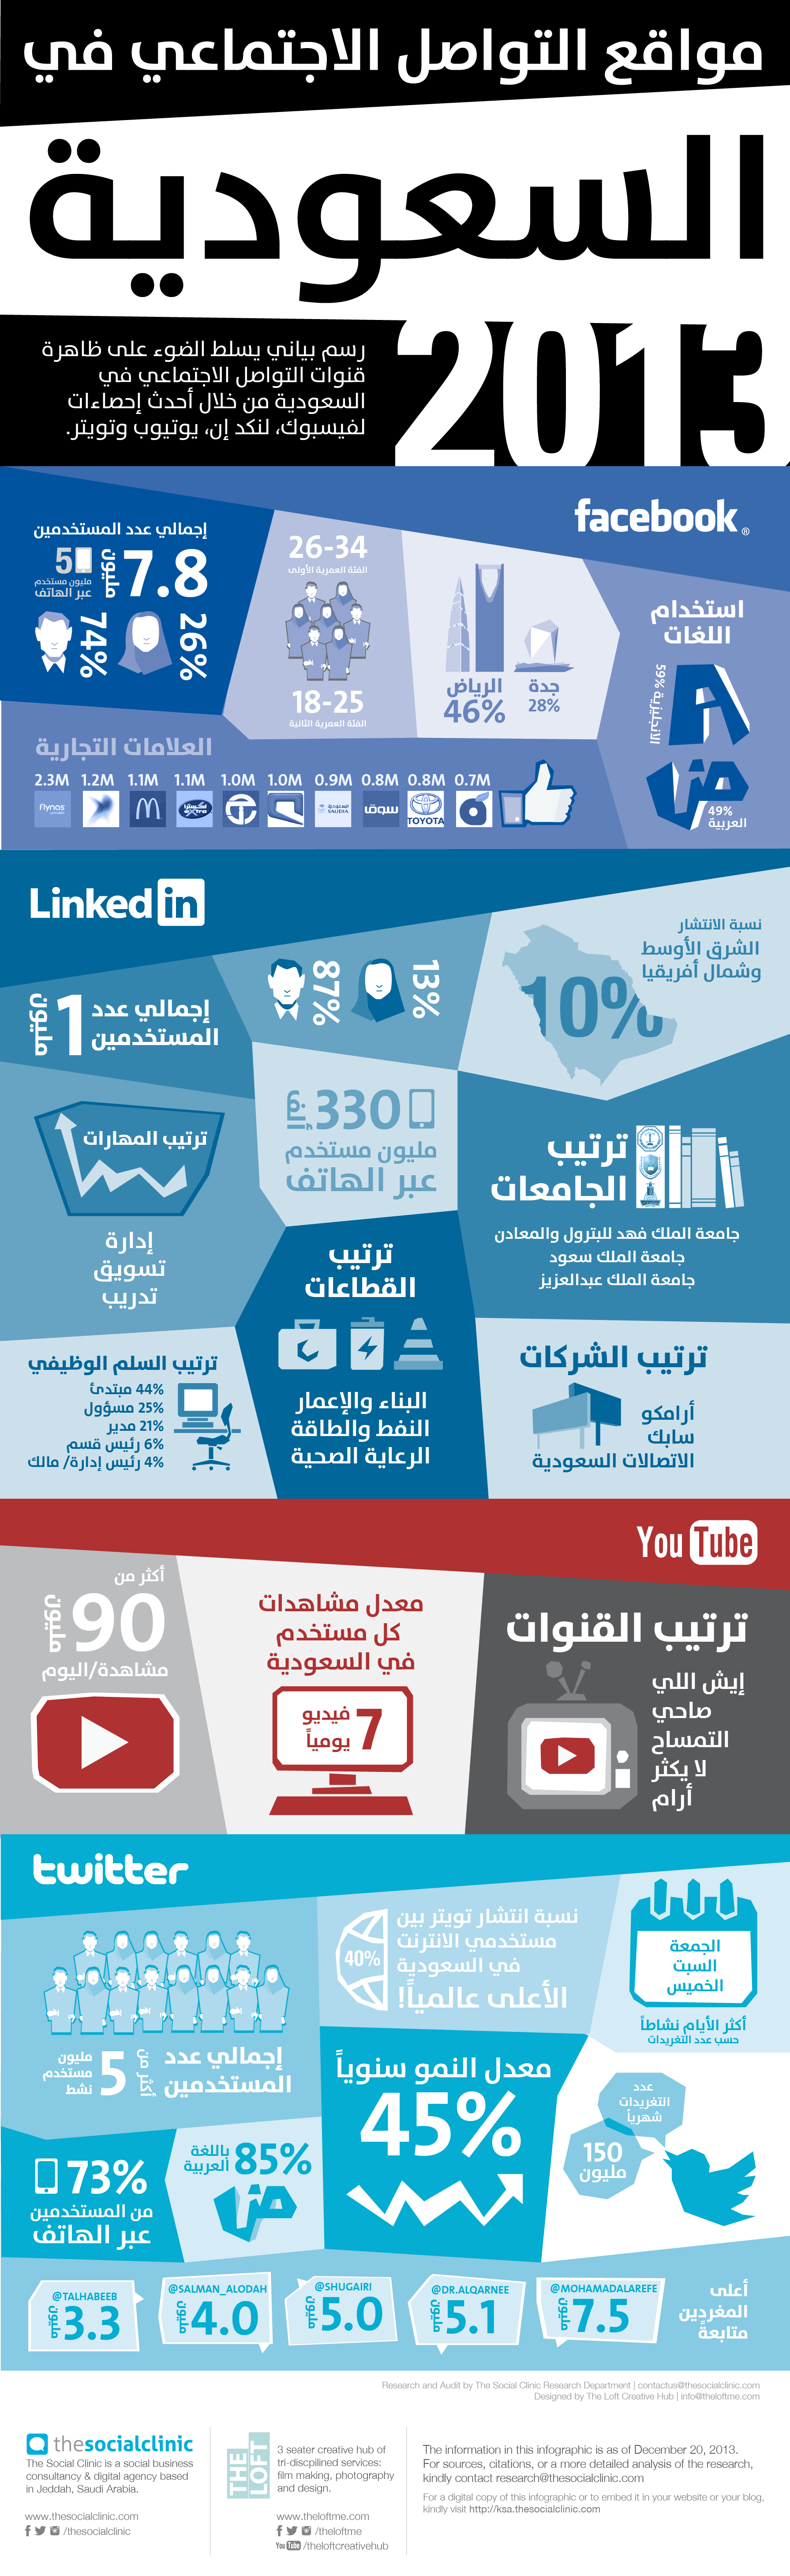 The State of Social Media in Saudi Arabia AR انفوجرافيك جديد عن استخدام الشبكات الإجتماعية في السعودية للعام 2013